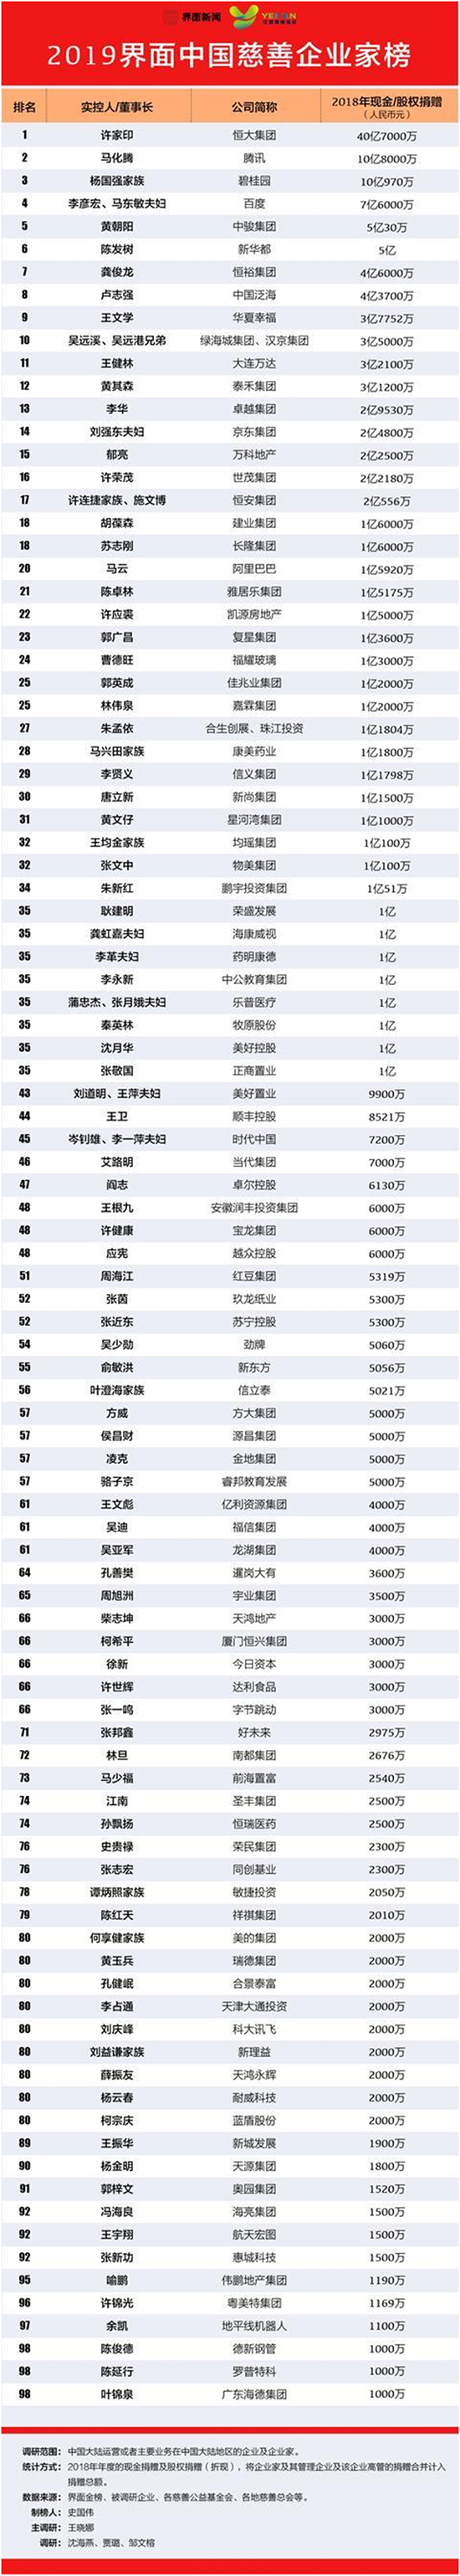 2019中国慈善企业家榜单出炉 许家印登榜首